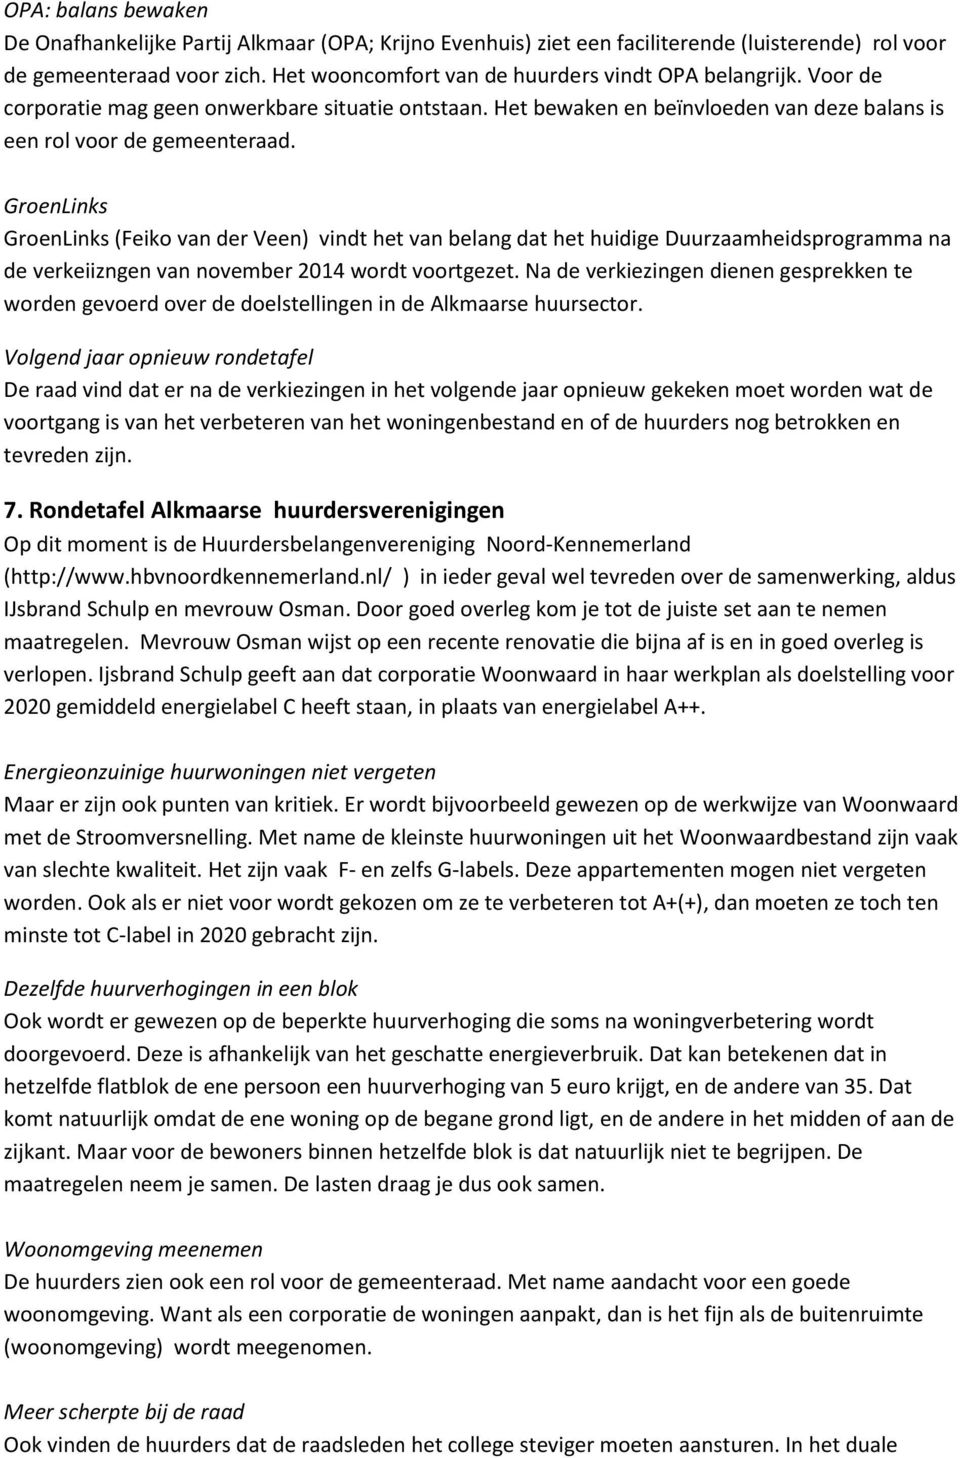 GroenLinks GroenLinks (Feiko van der Veen) vindt het van belang dat het huidige Duurzaamheidsprogramma na de verkeiizngen van november 2014 wordt voortgezet.